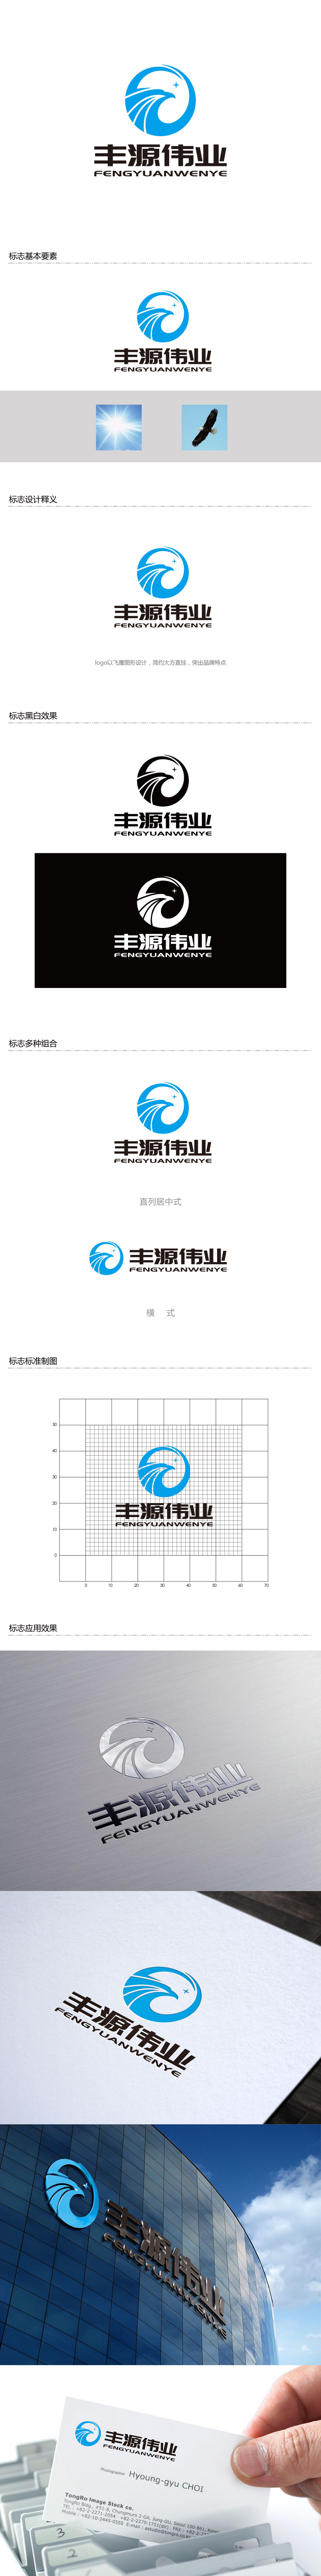 孙金泽的北京丰源伟业建筑装饰工程有限公司logo设计